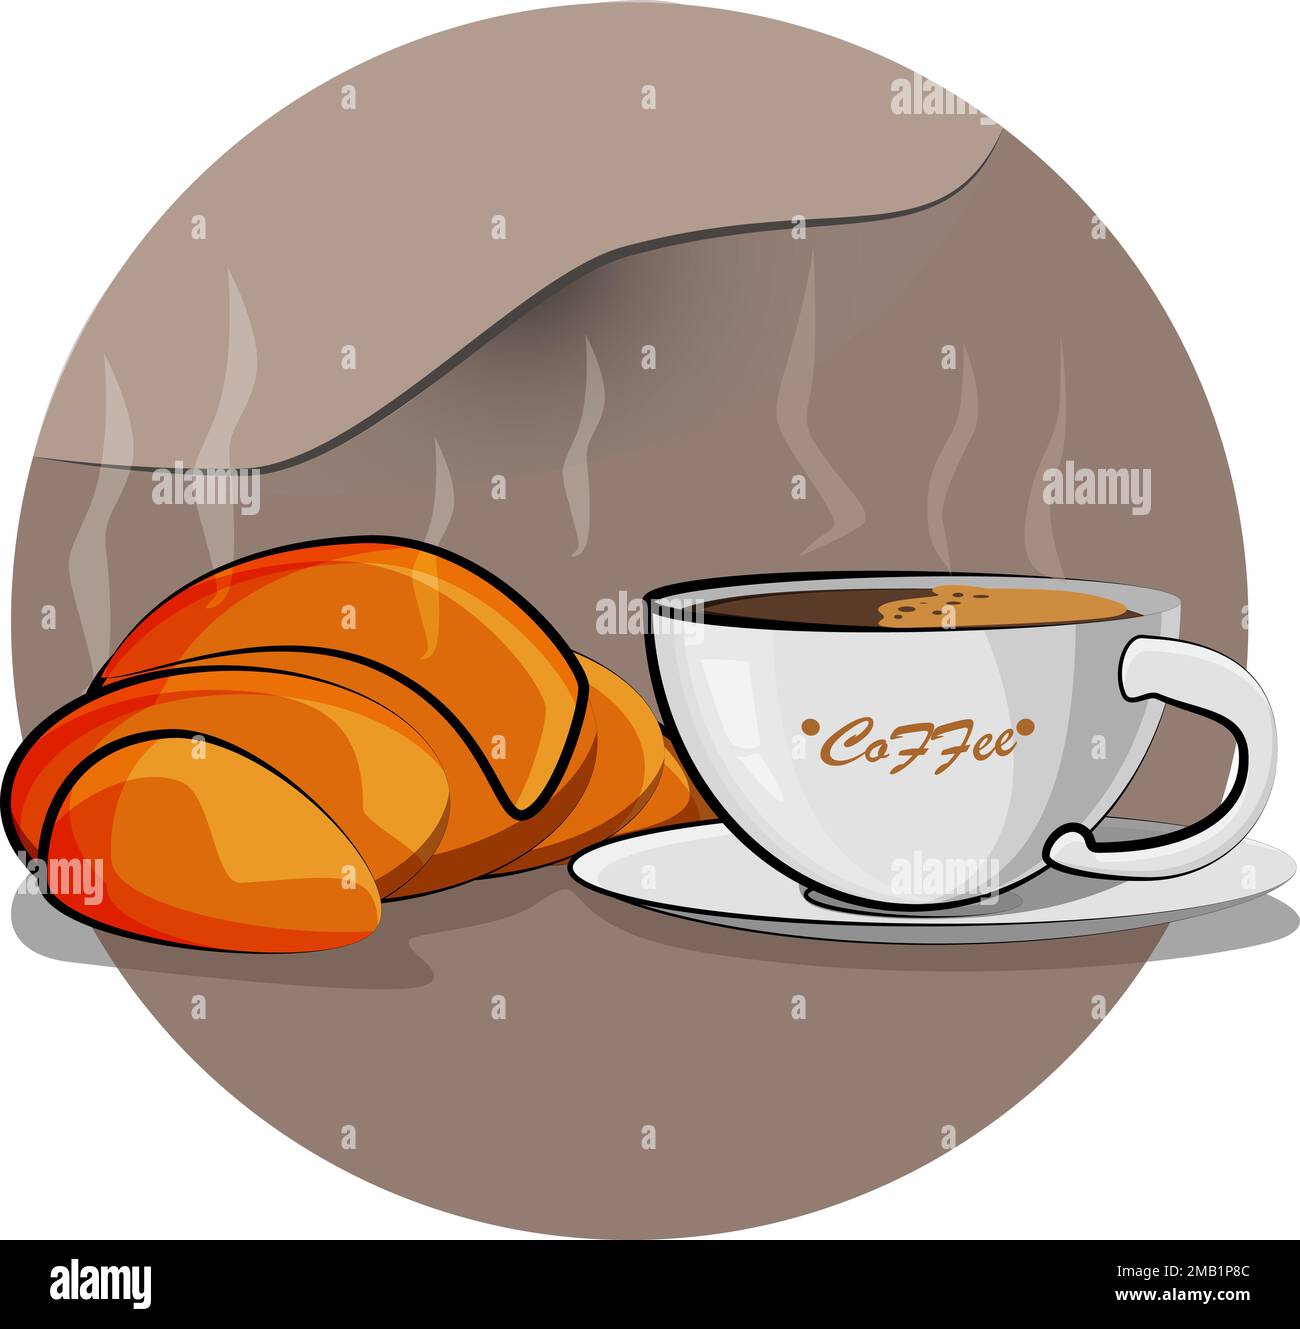 Un délicieux croissant avec du café parfumé est le meilleur petit déjeuner Illustration de Vecteur